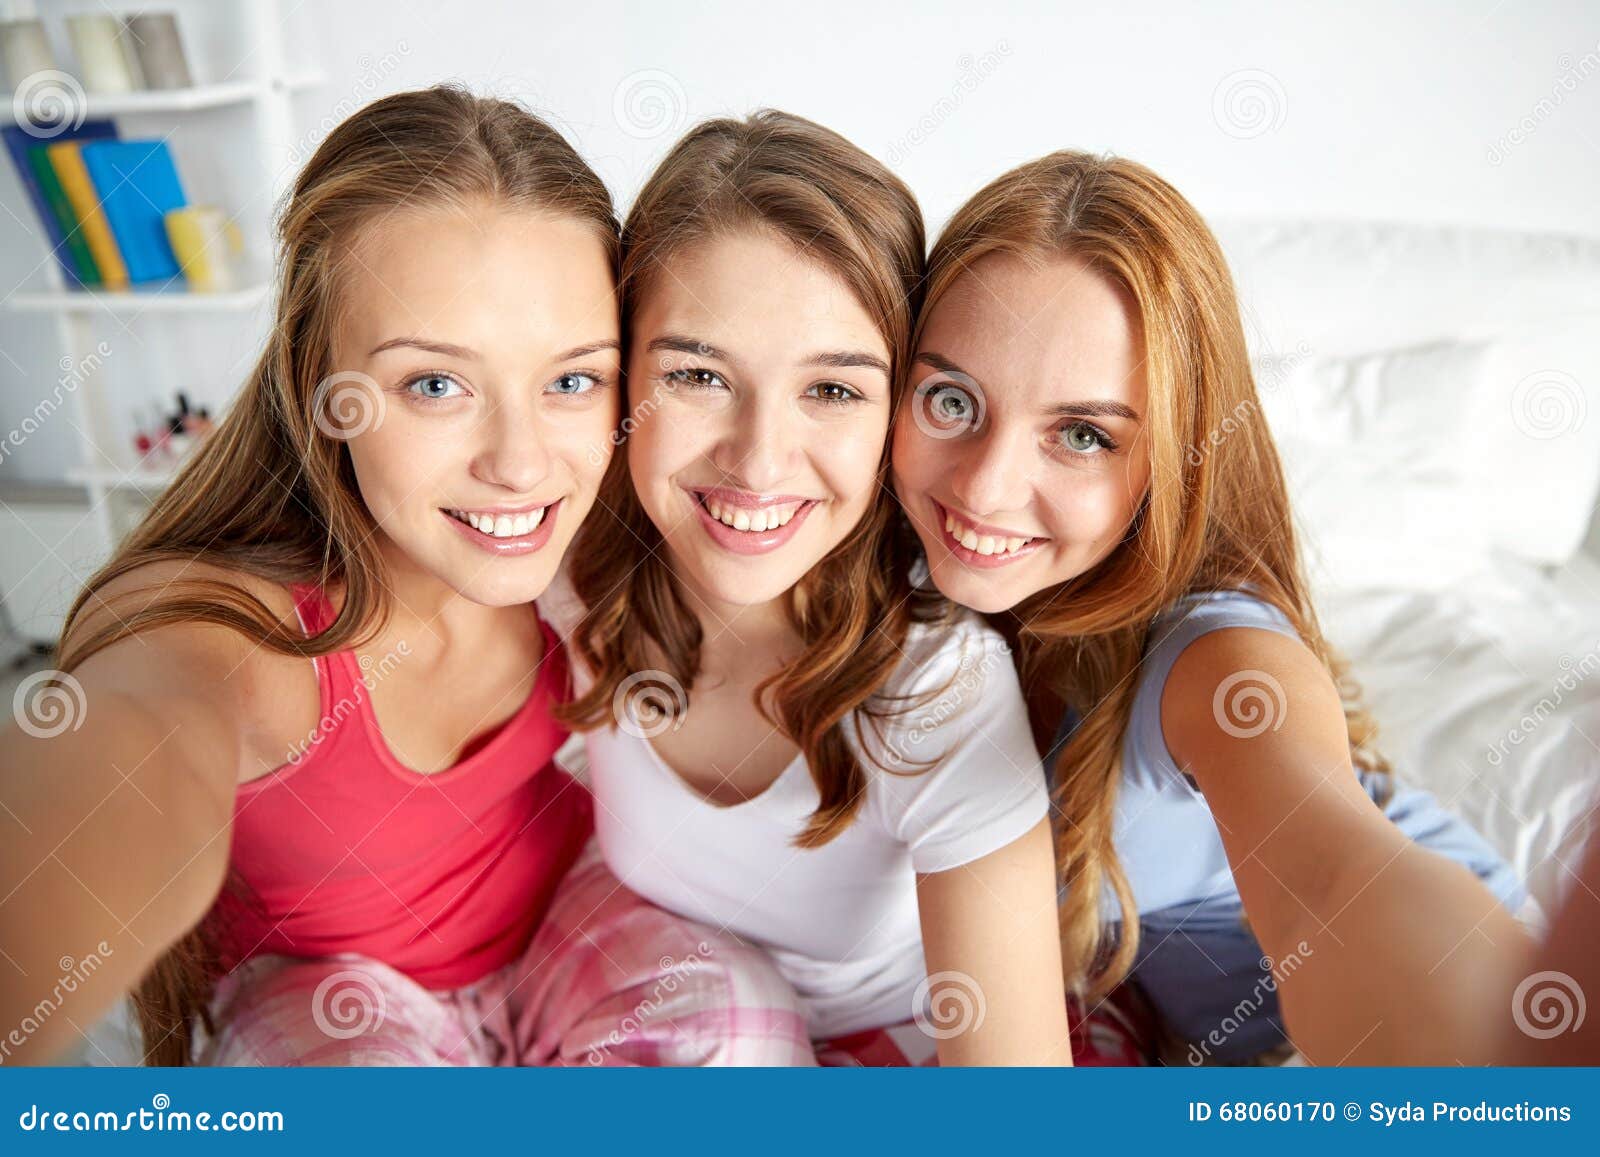 Teen Girls Selfie Together